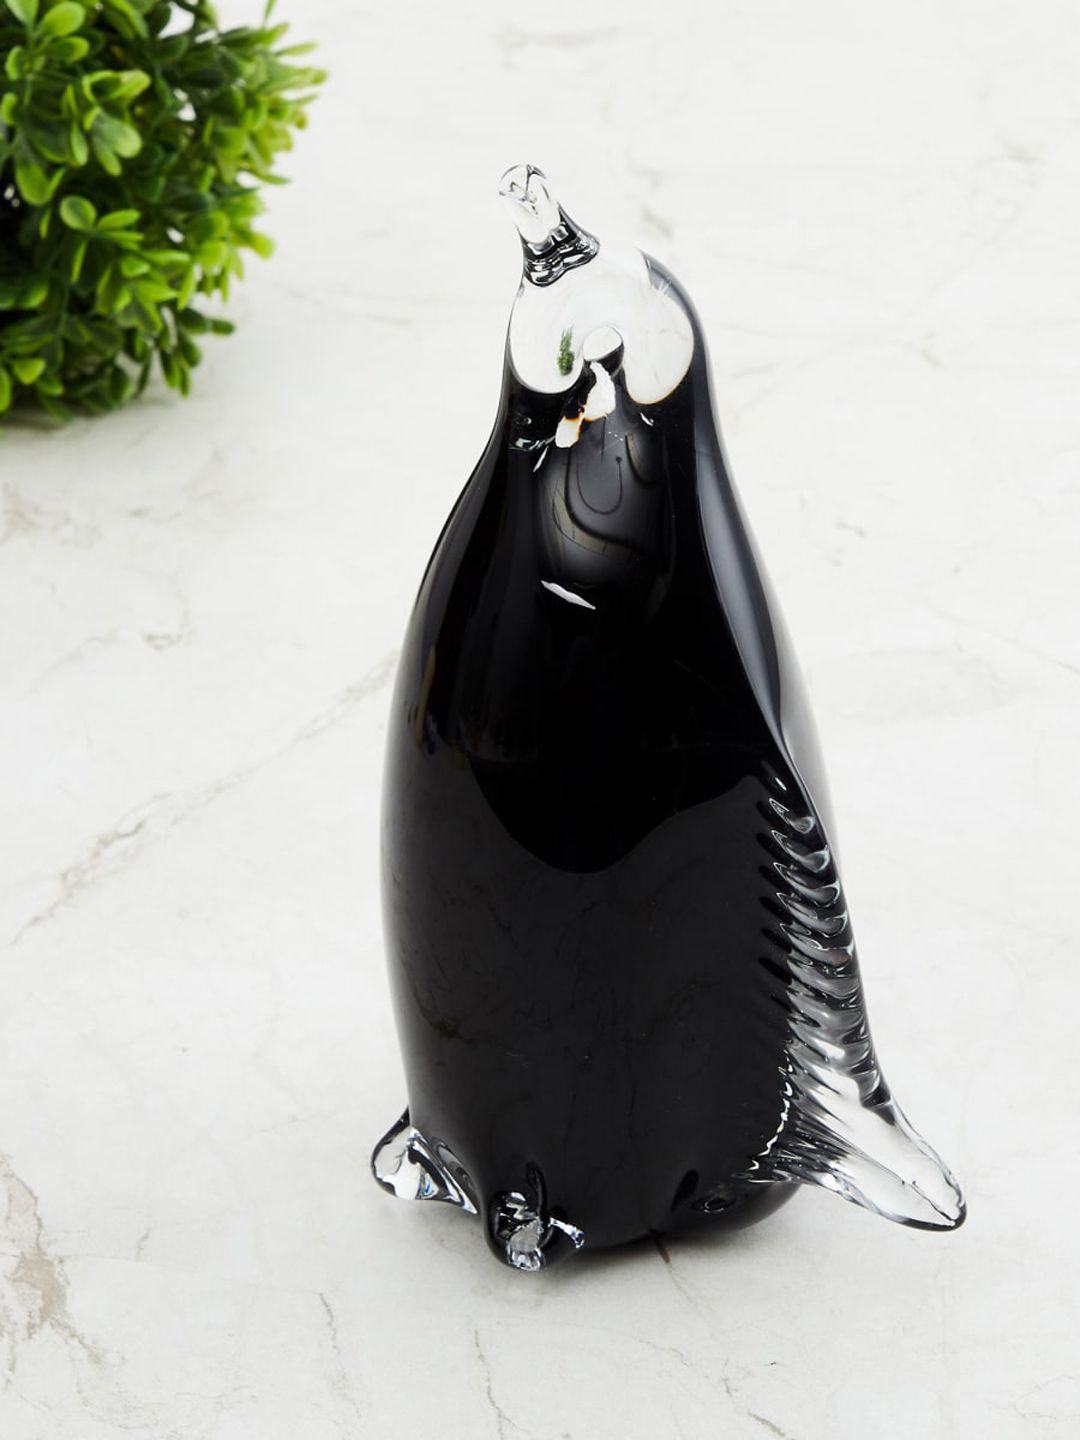 Home Centre Black Glass Penguin Figurine Showpiece Price in India